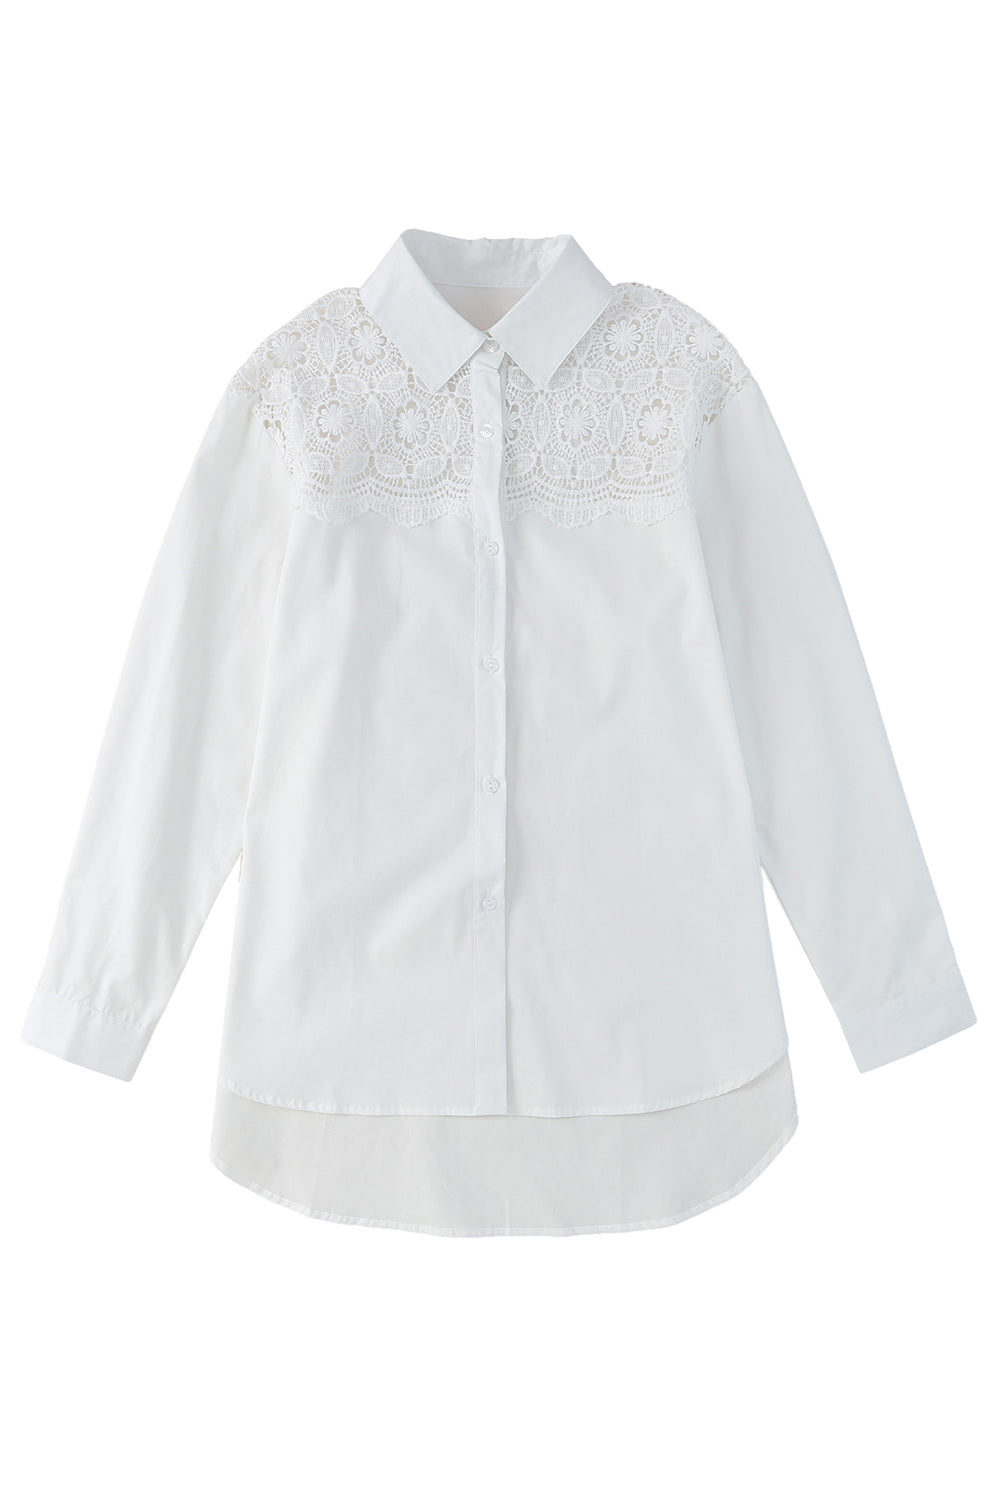 Chemise boutonnée en dentelle blanche avec épissure au crochet